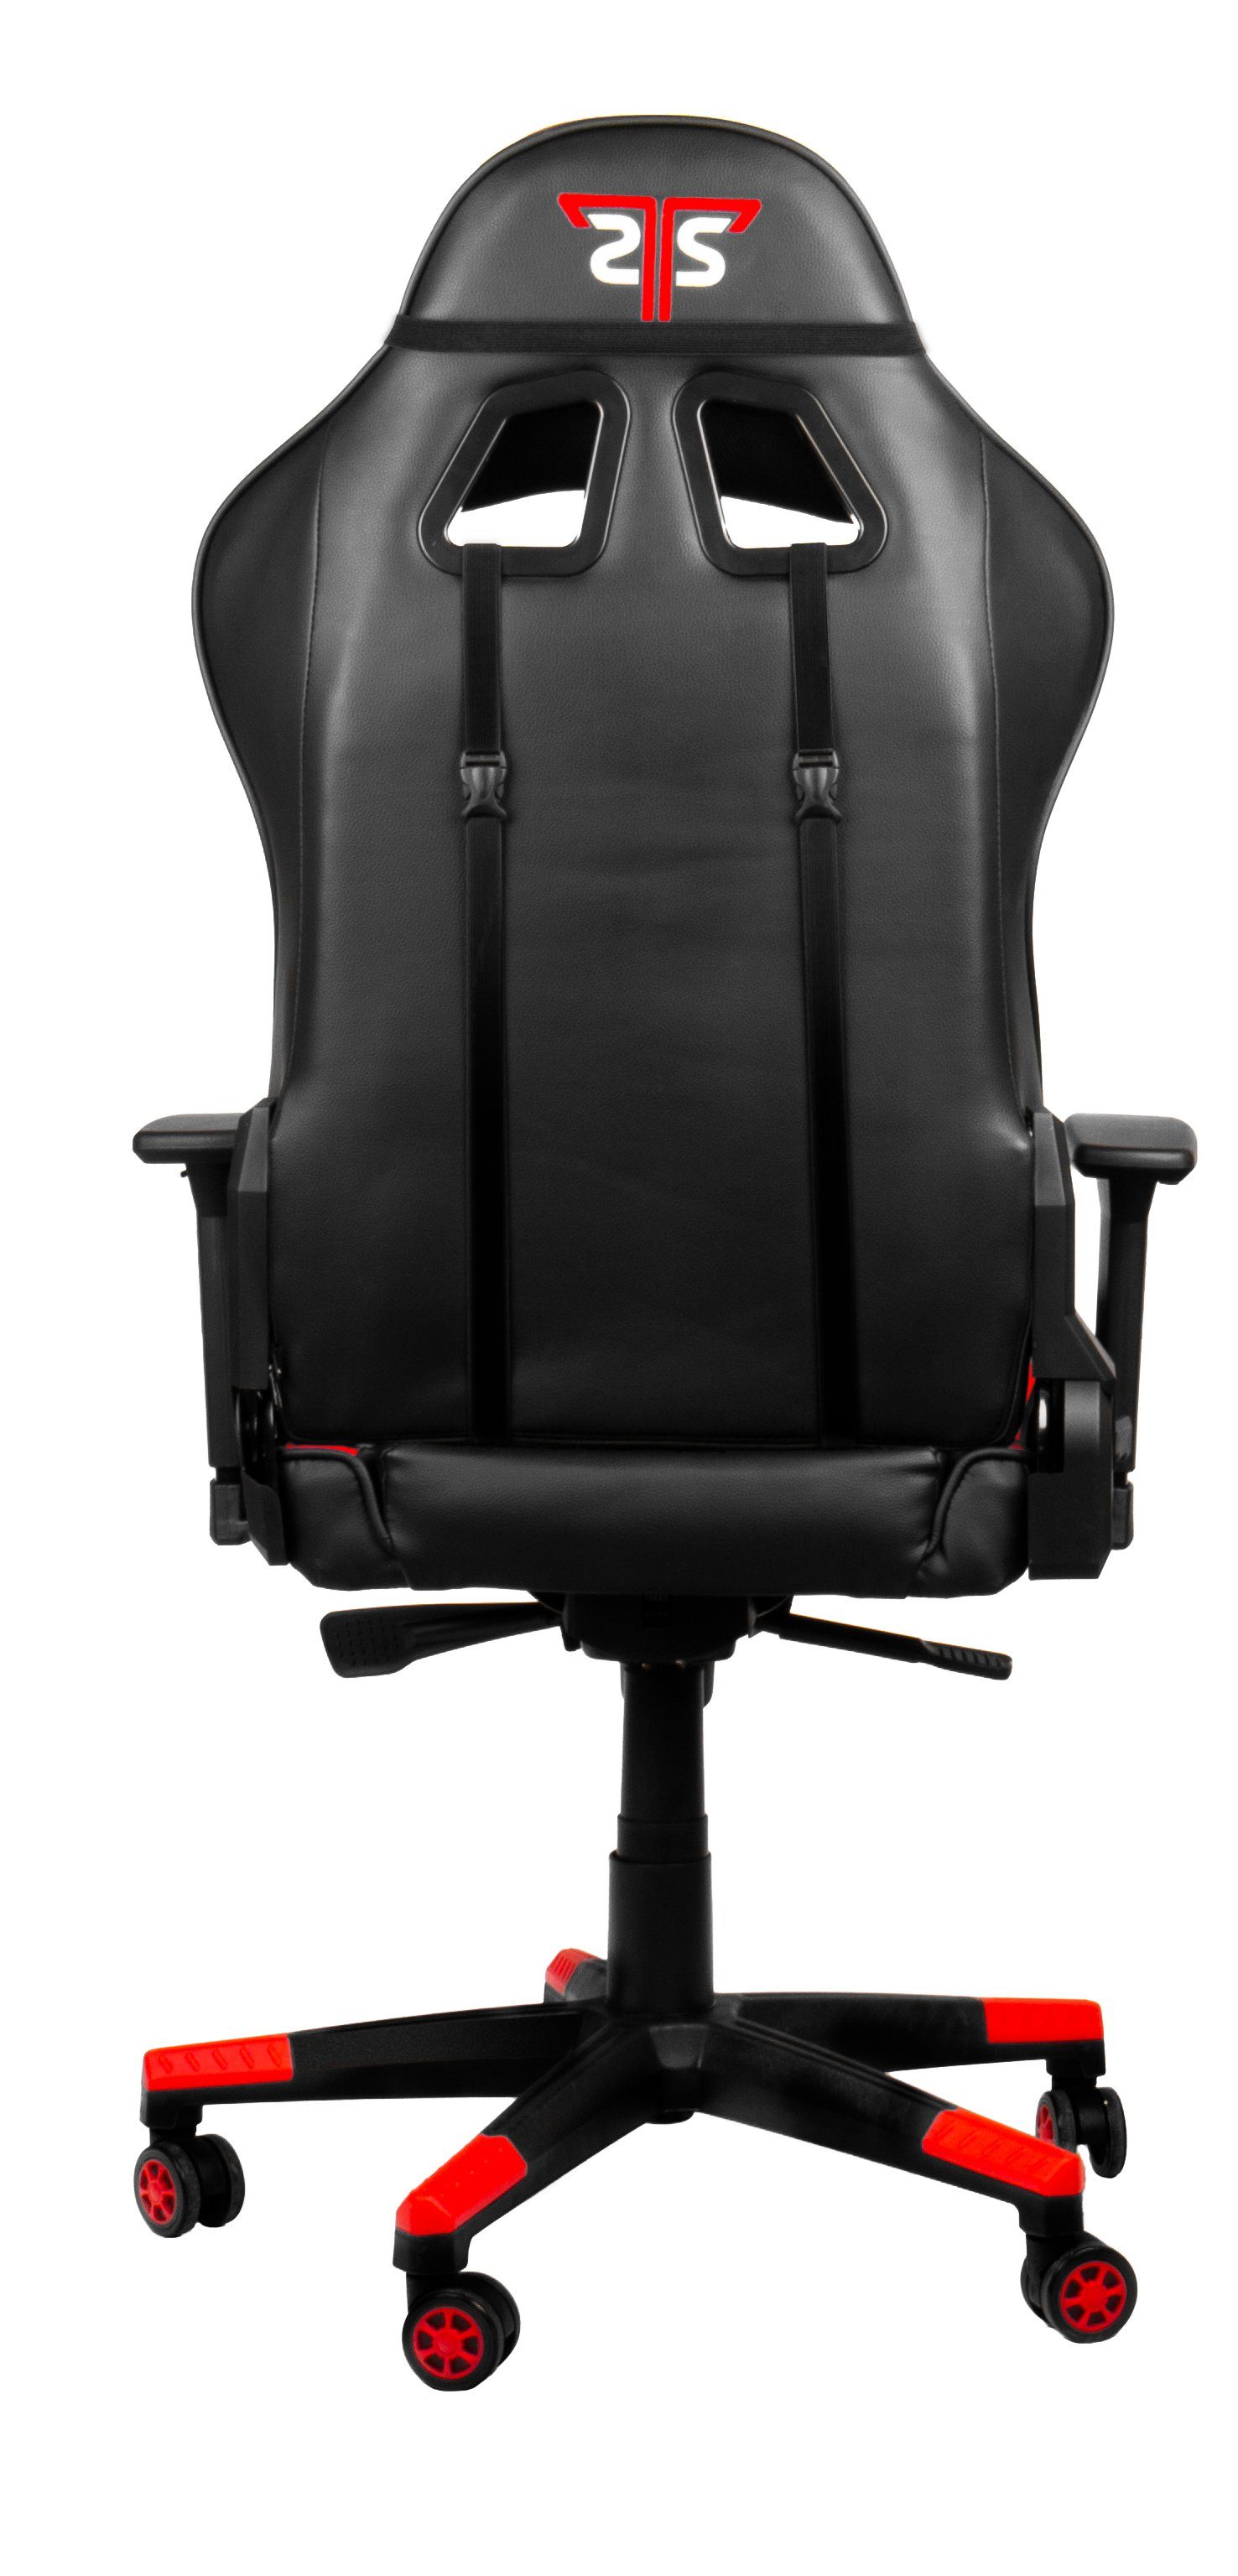 Gamingstuhl,Schreibtischstuhl XL" Red ergonomischer Gaming-Stuhl Hyrican "Striker Code